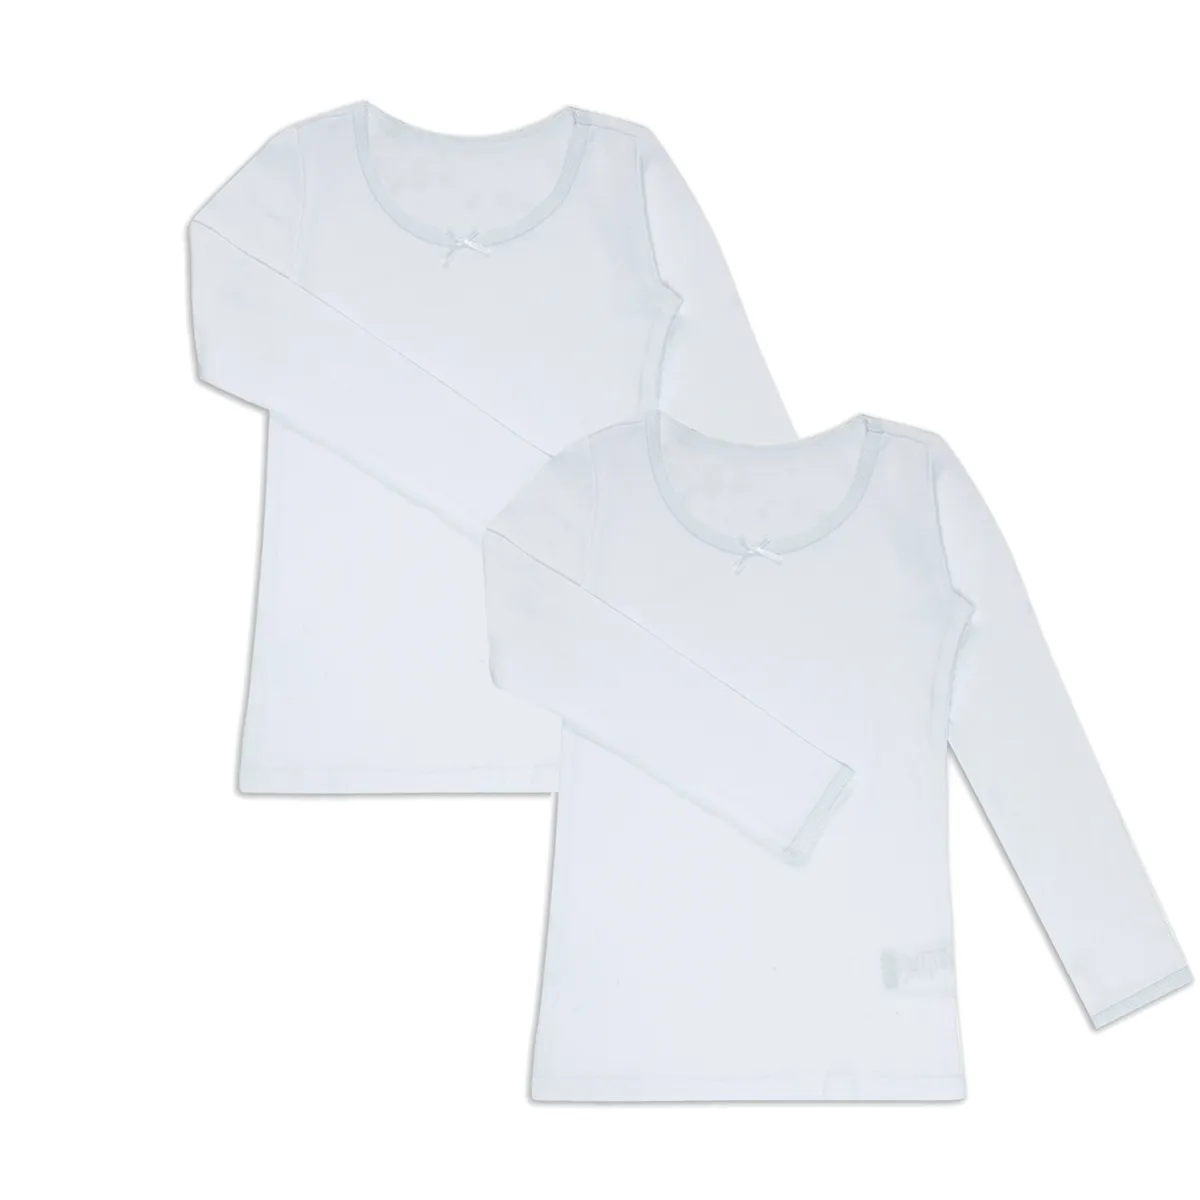 2 Pack Long Sleeve Vest - White